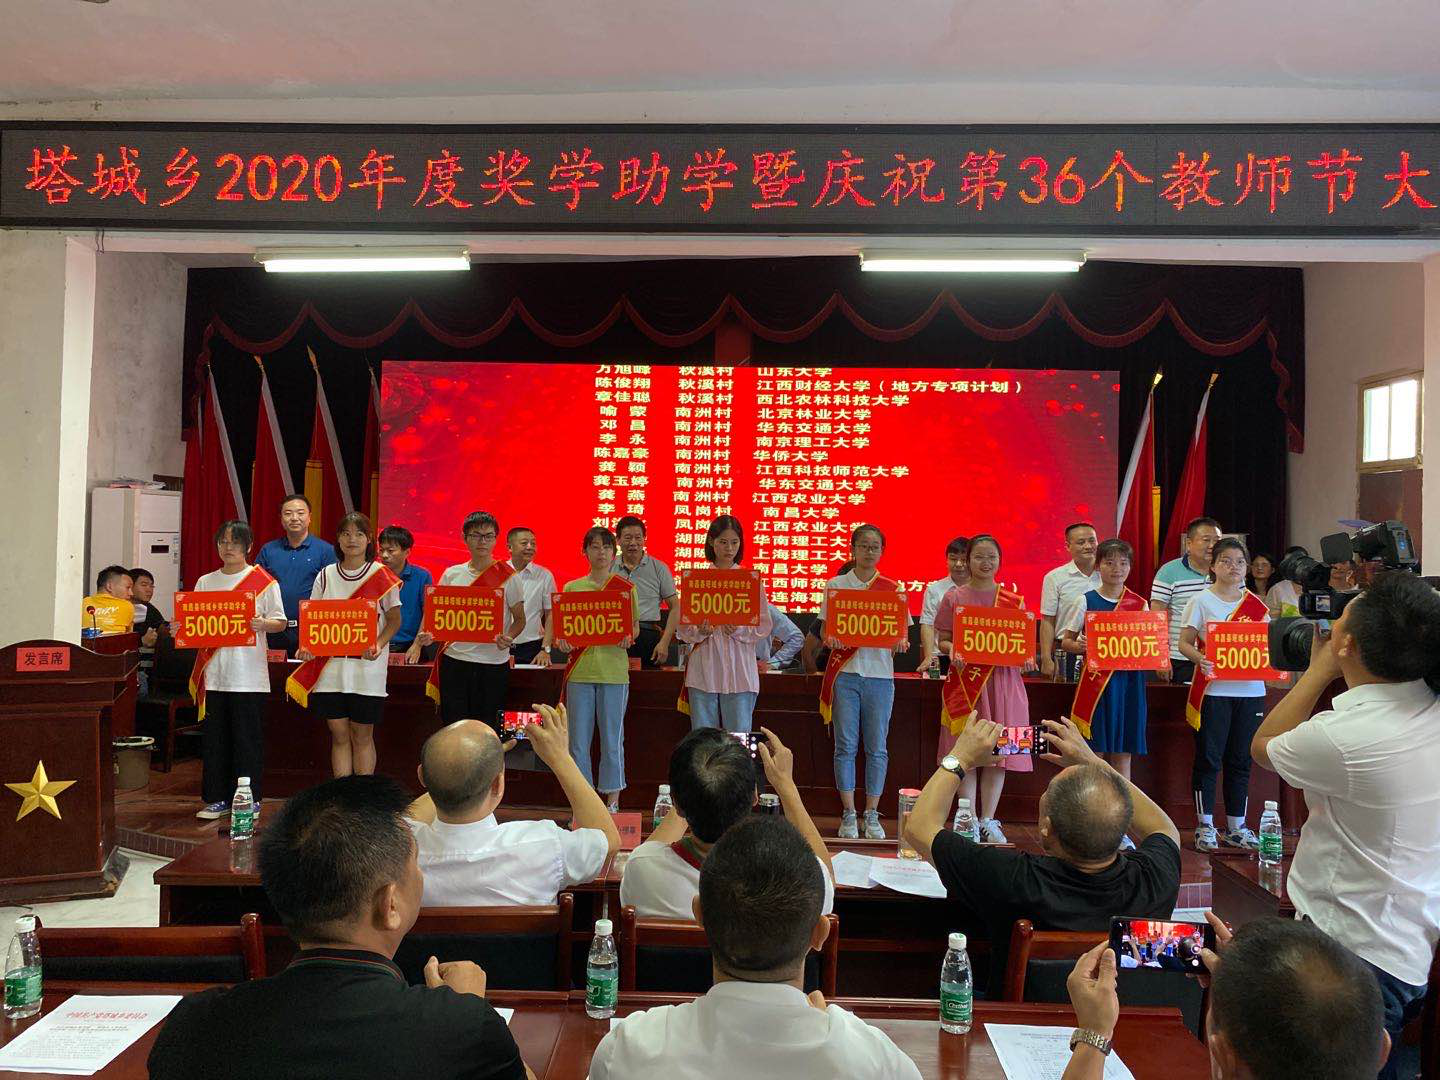 南昌县塔城乡举行2020年度奖学助学暨庆祝第36个教师节大会